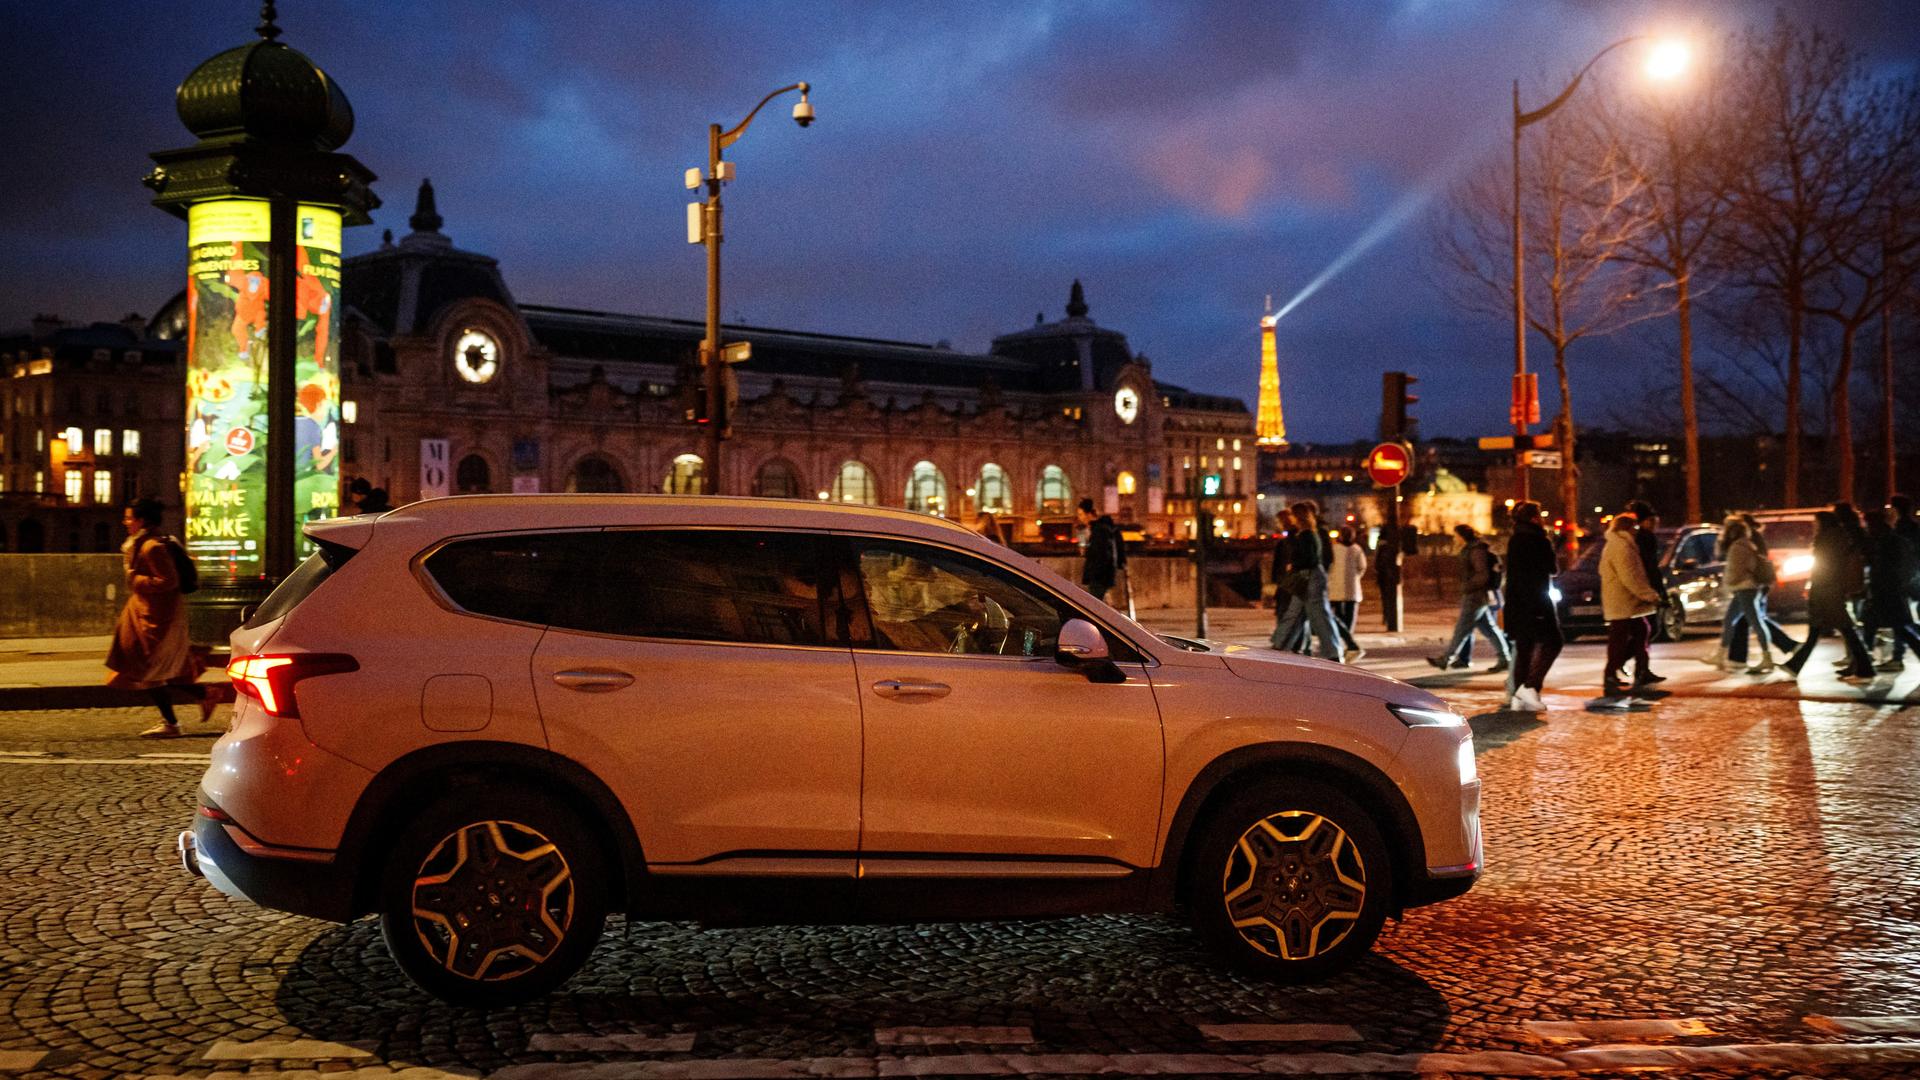 Das Foto zeigt einen großen Pkw in Paris, es ist Abend, im Hintergrund leuchtet der Eiffelturm.